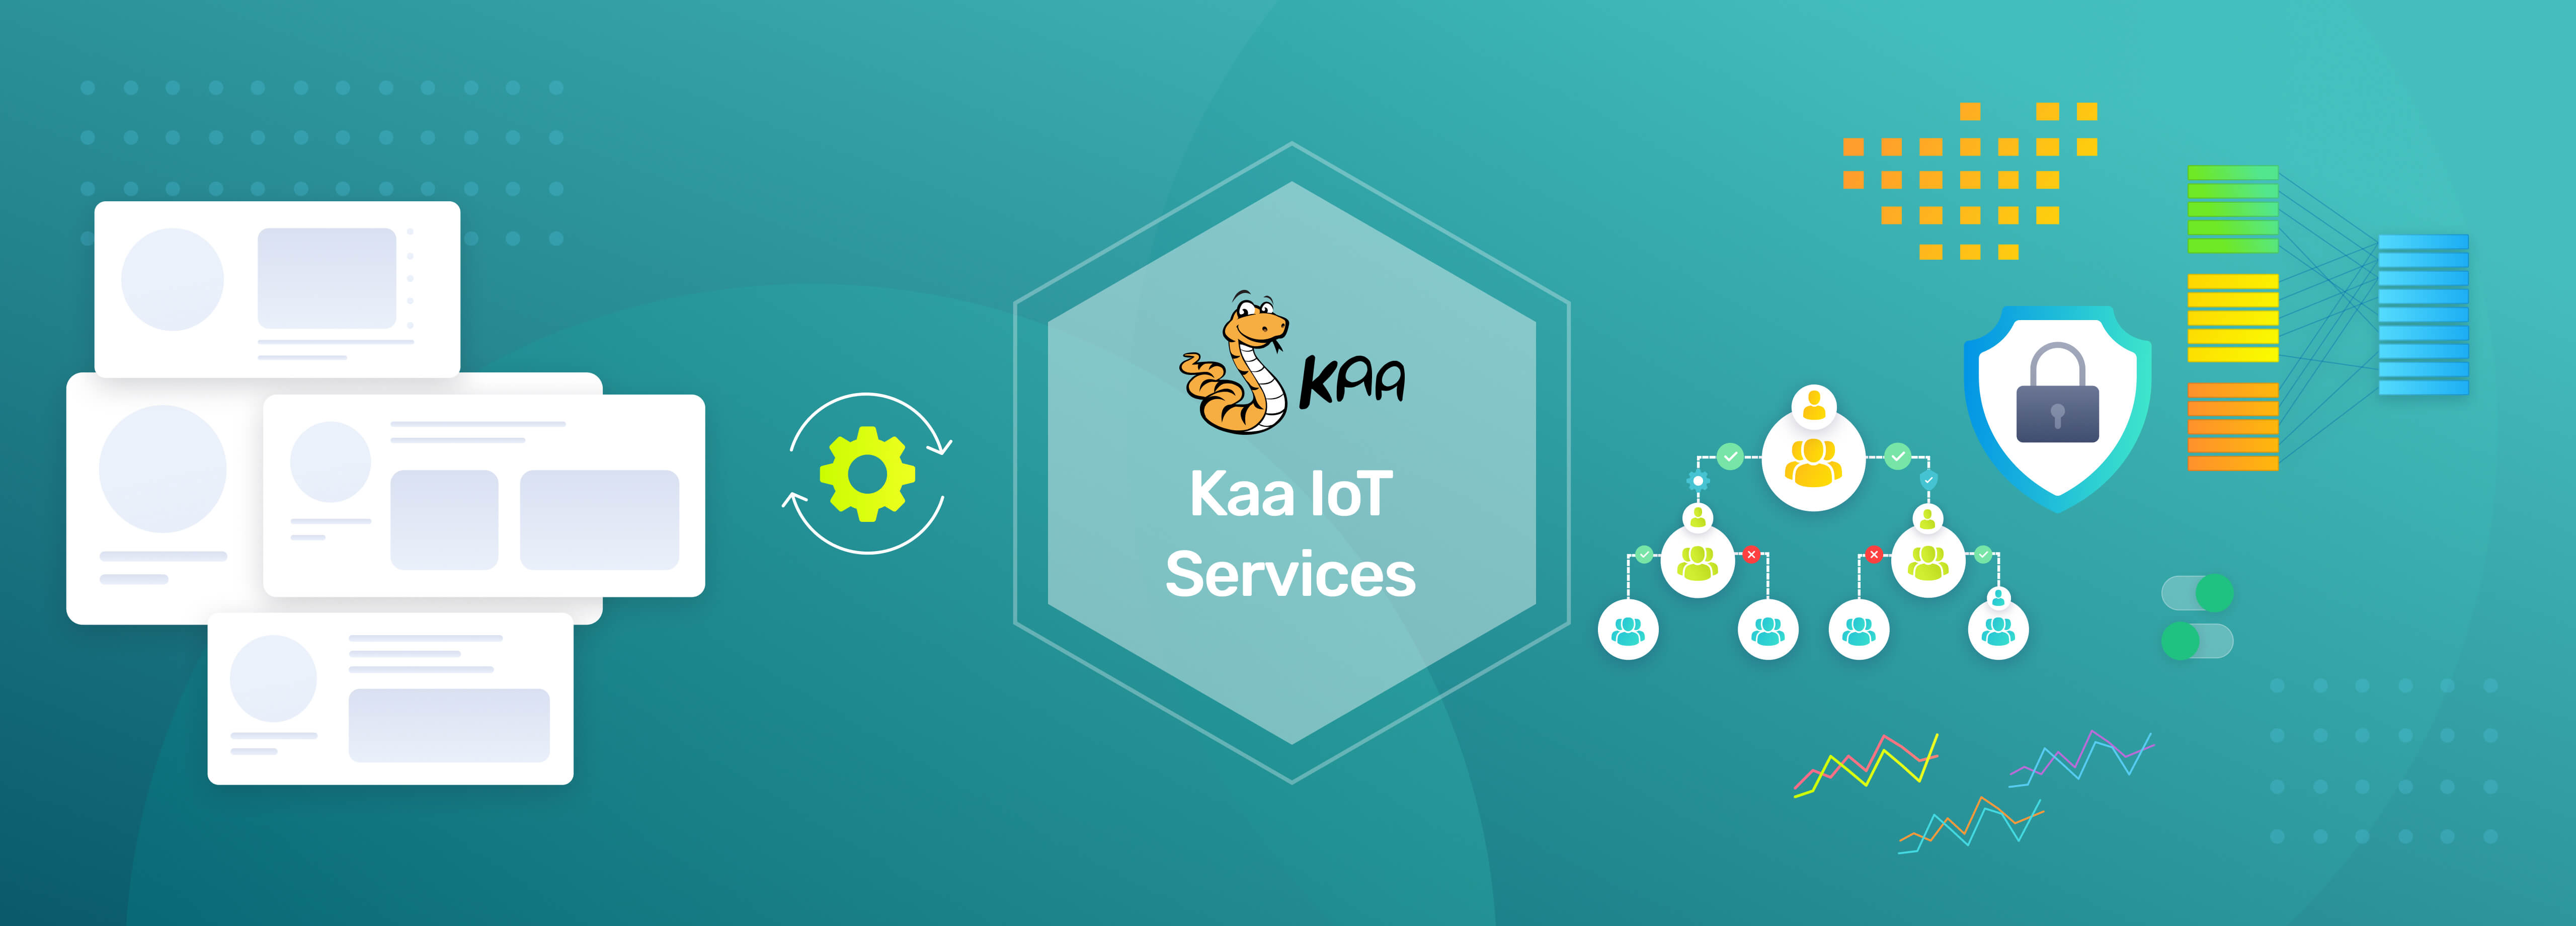 Kaa IoT Services